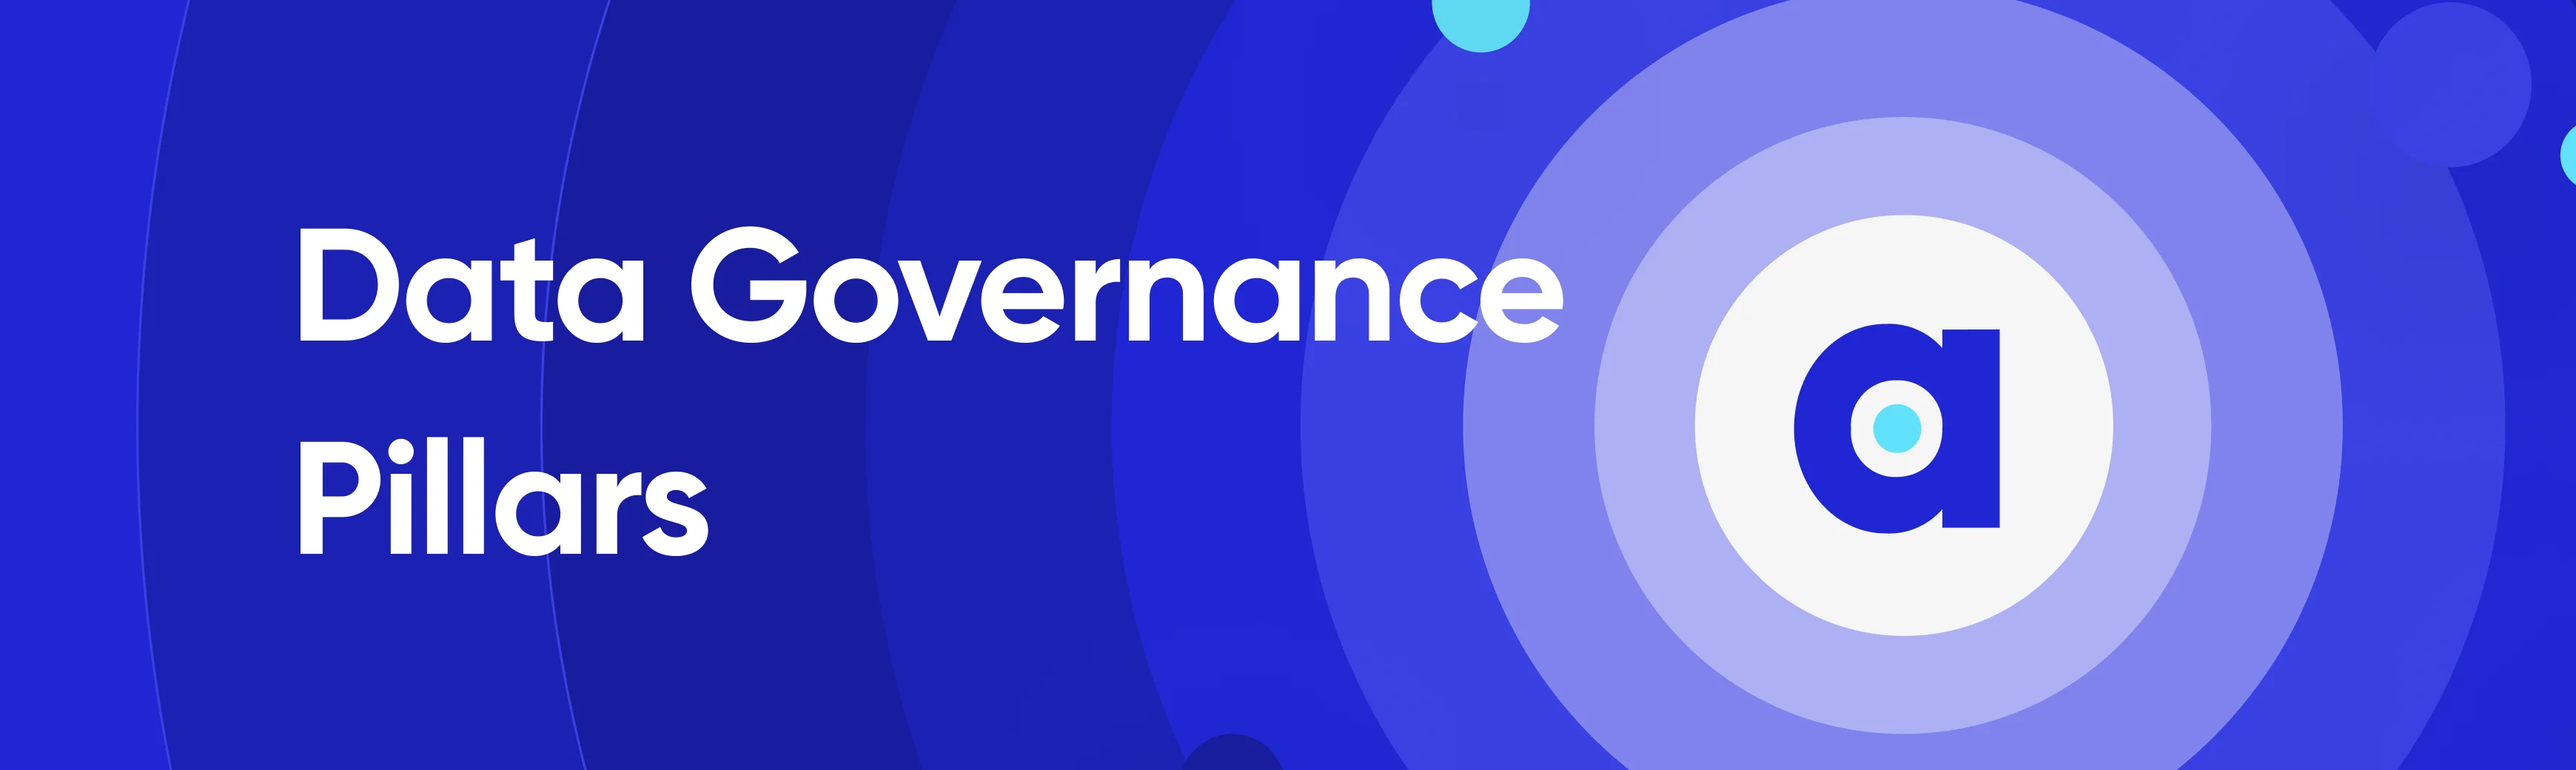 Data governance pillars